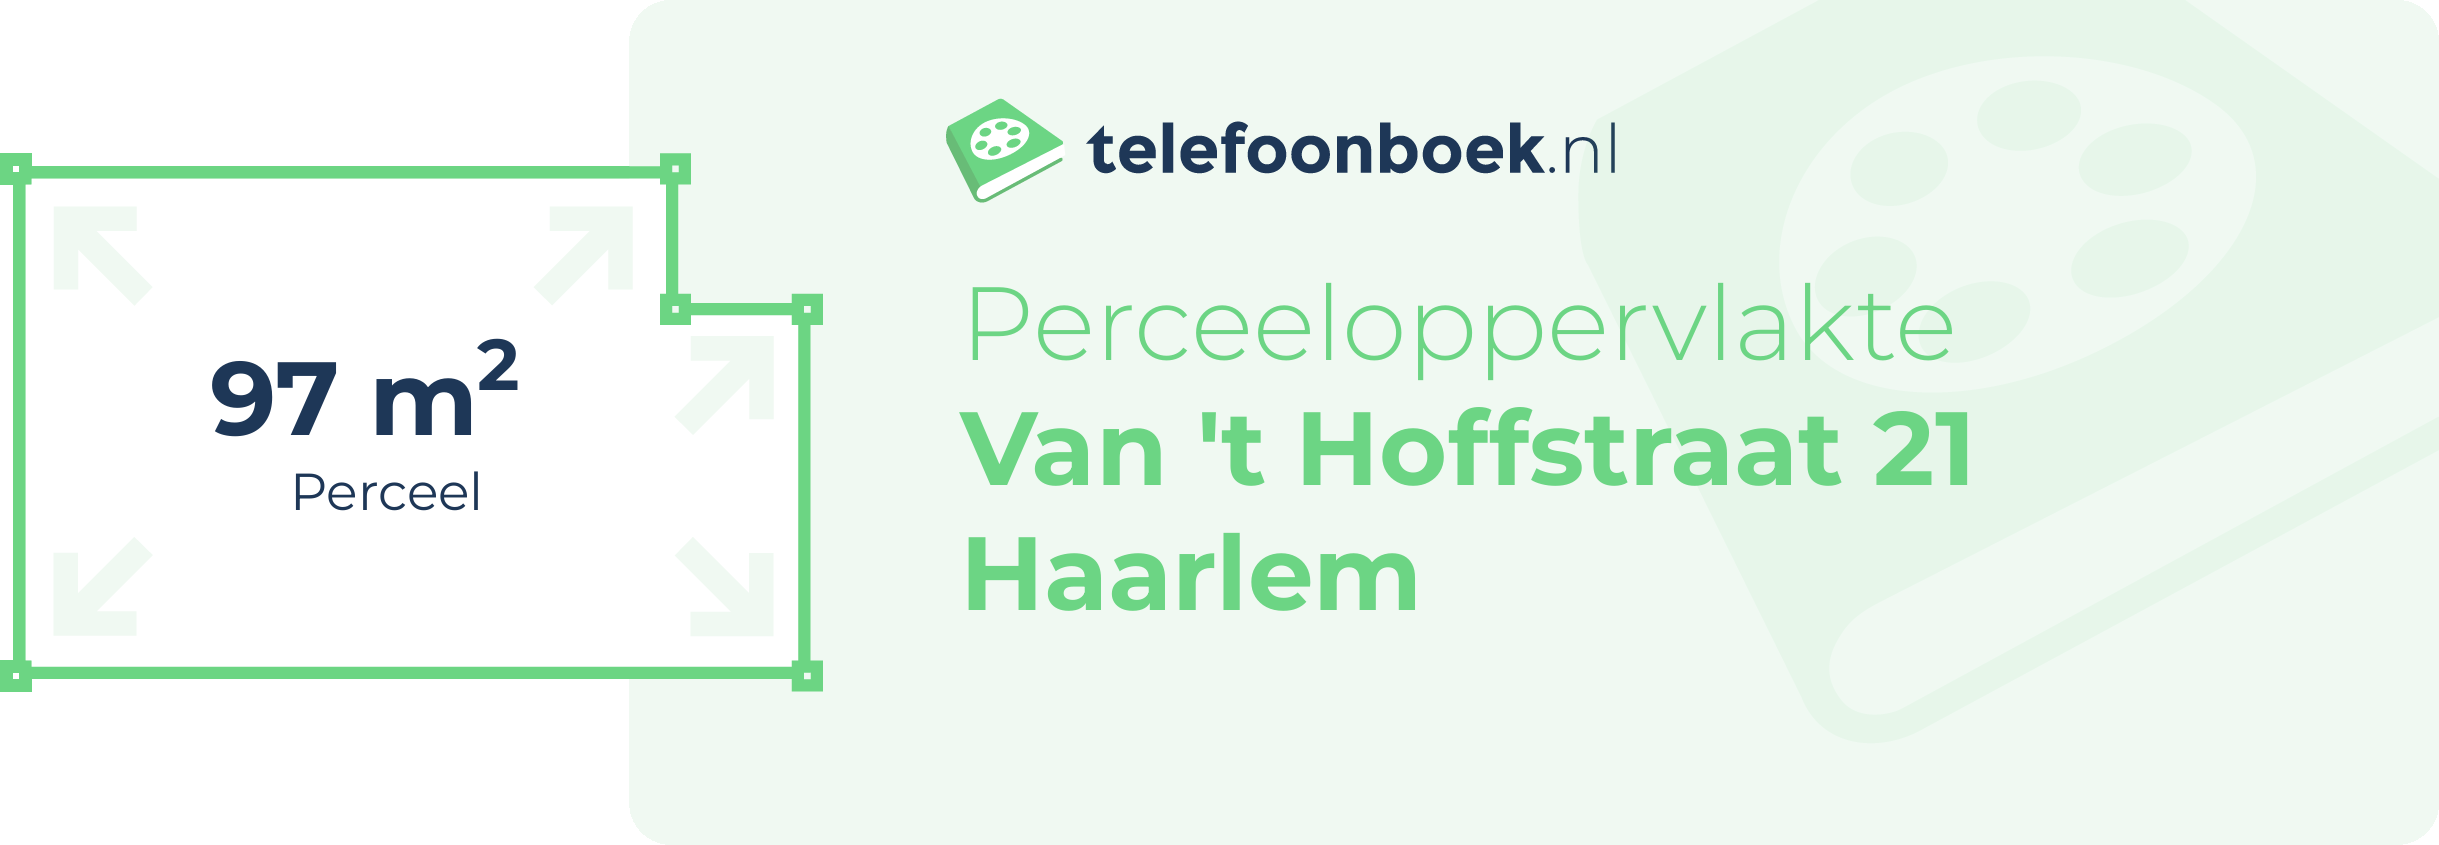 Perceeloppervlakte Van 't Hoffstraat 21 Haarlem